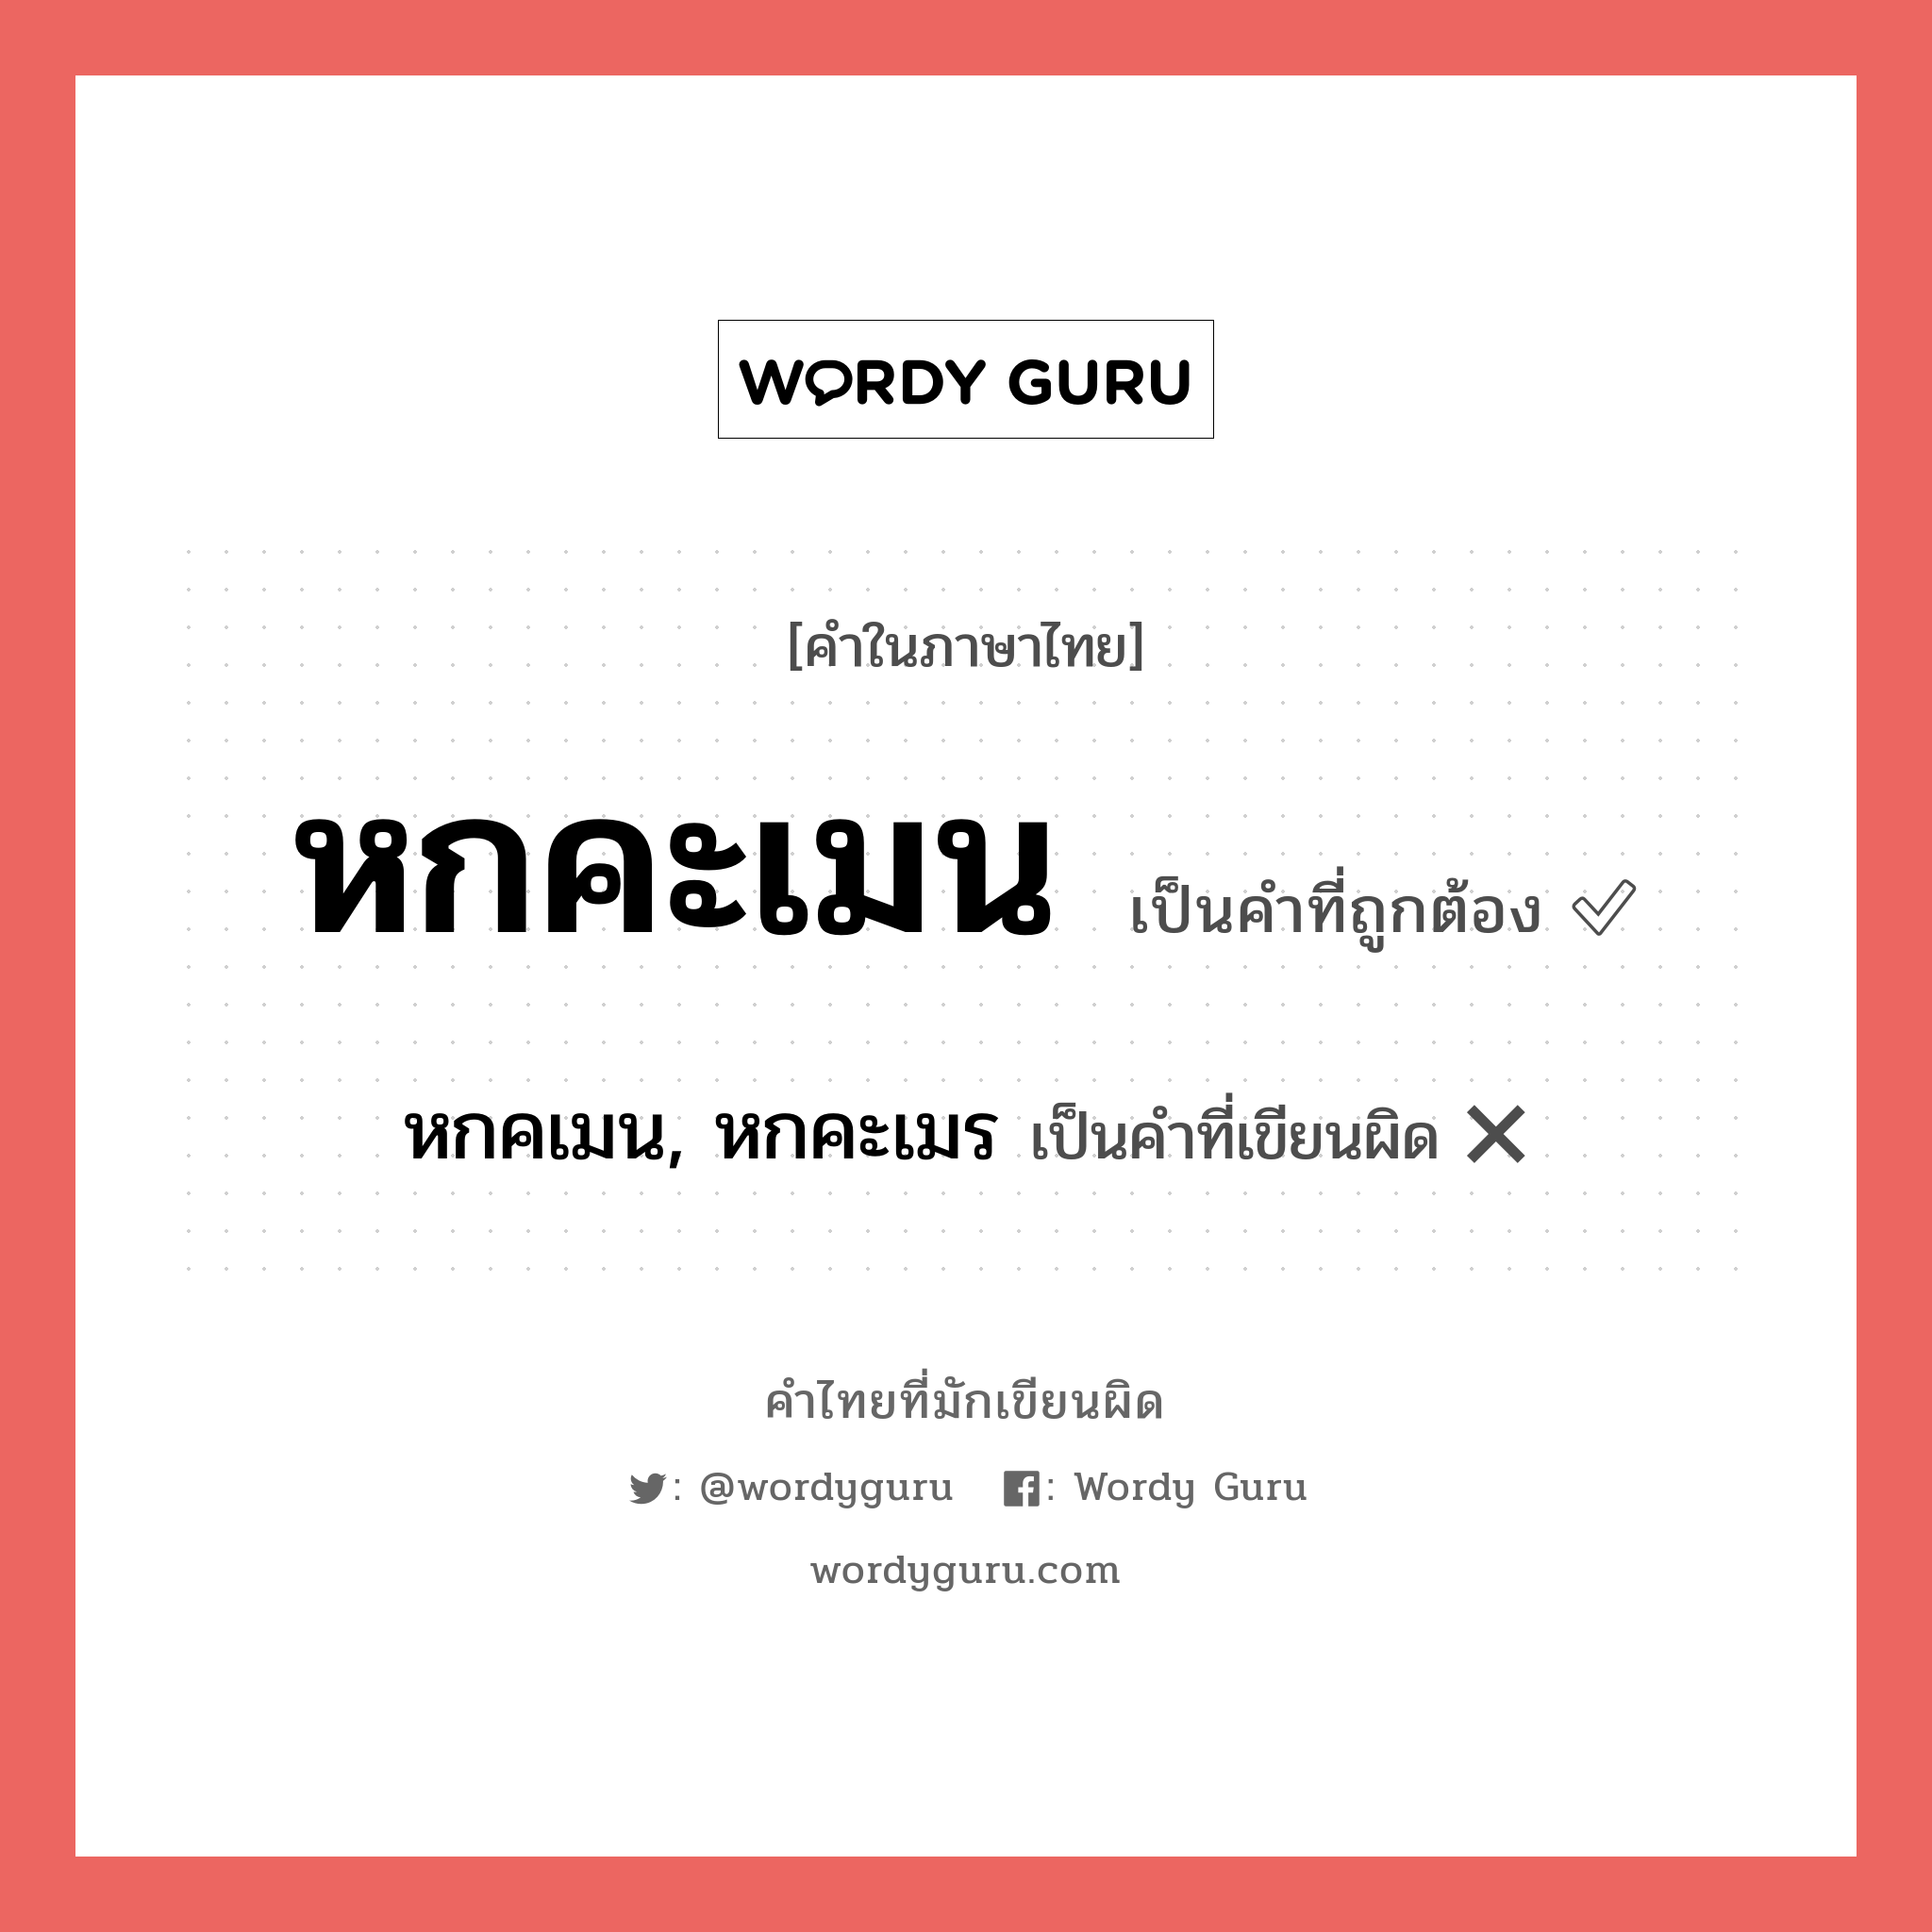 หกคเมน, หกคะเมร หรือ หกคะเมน คำไหนเขียนถูก?, คำในภาษาไทยที่มักเขียนผิด หกคเมน, หกคะเมร คำที่ผิด ❌ หกคะเมน